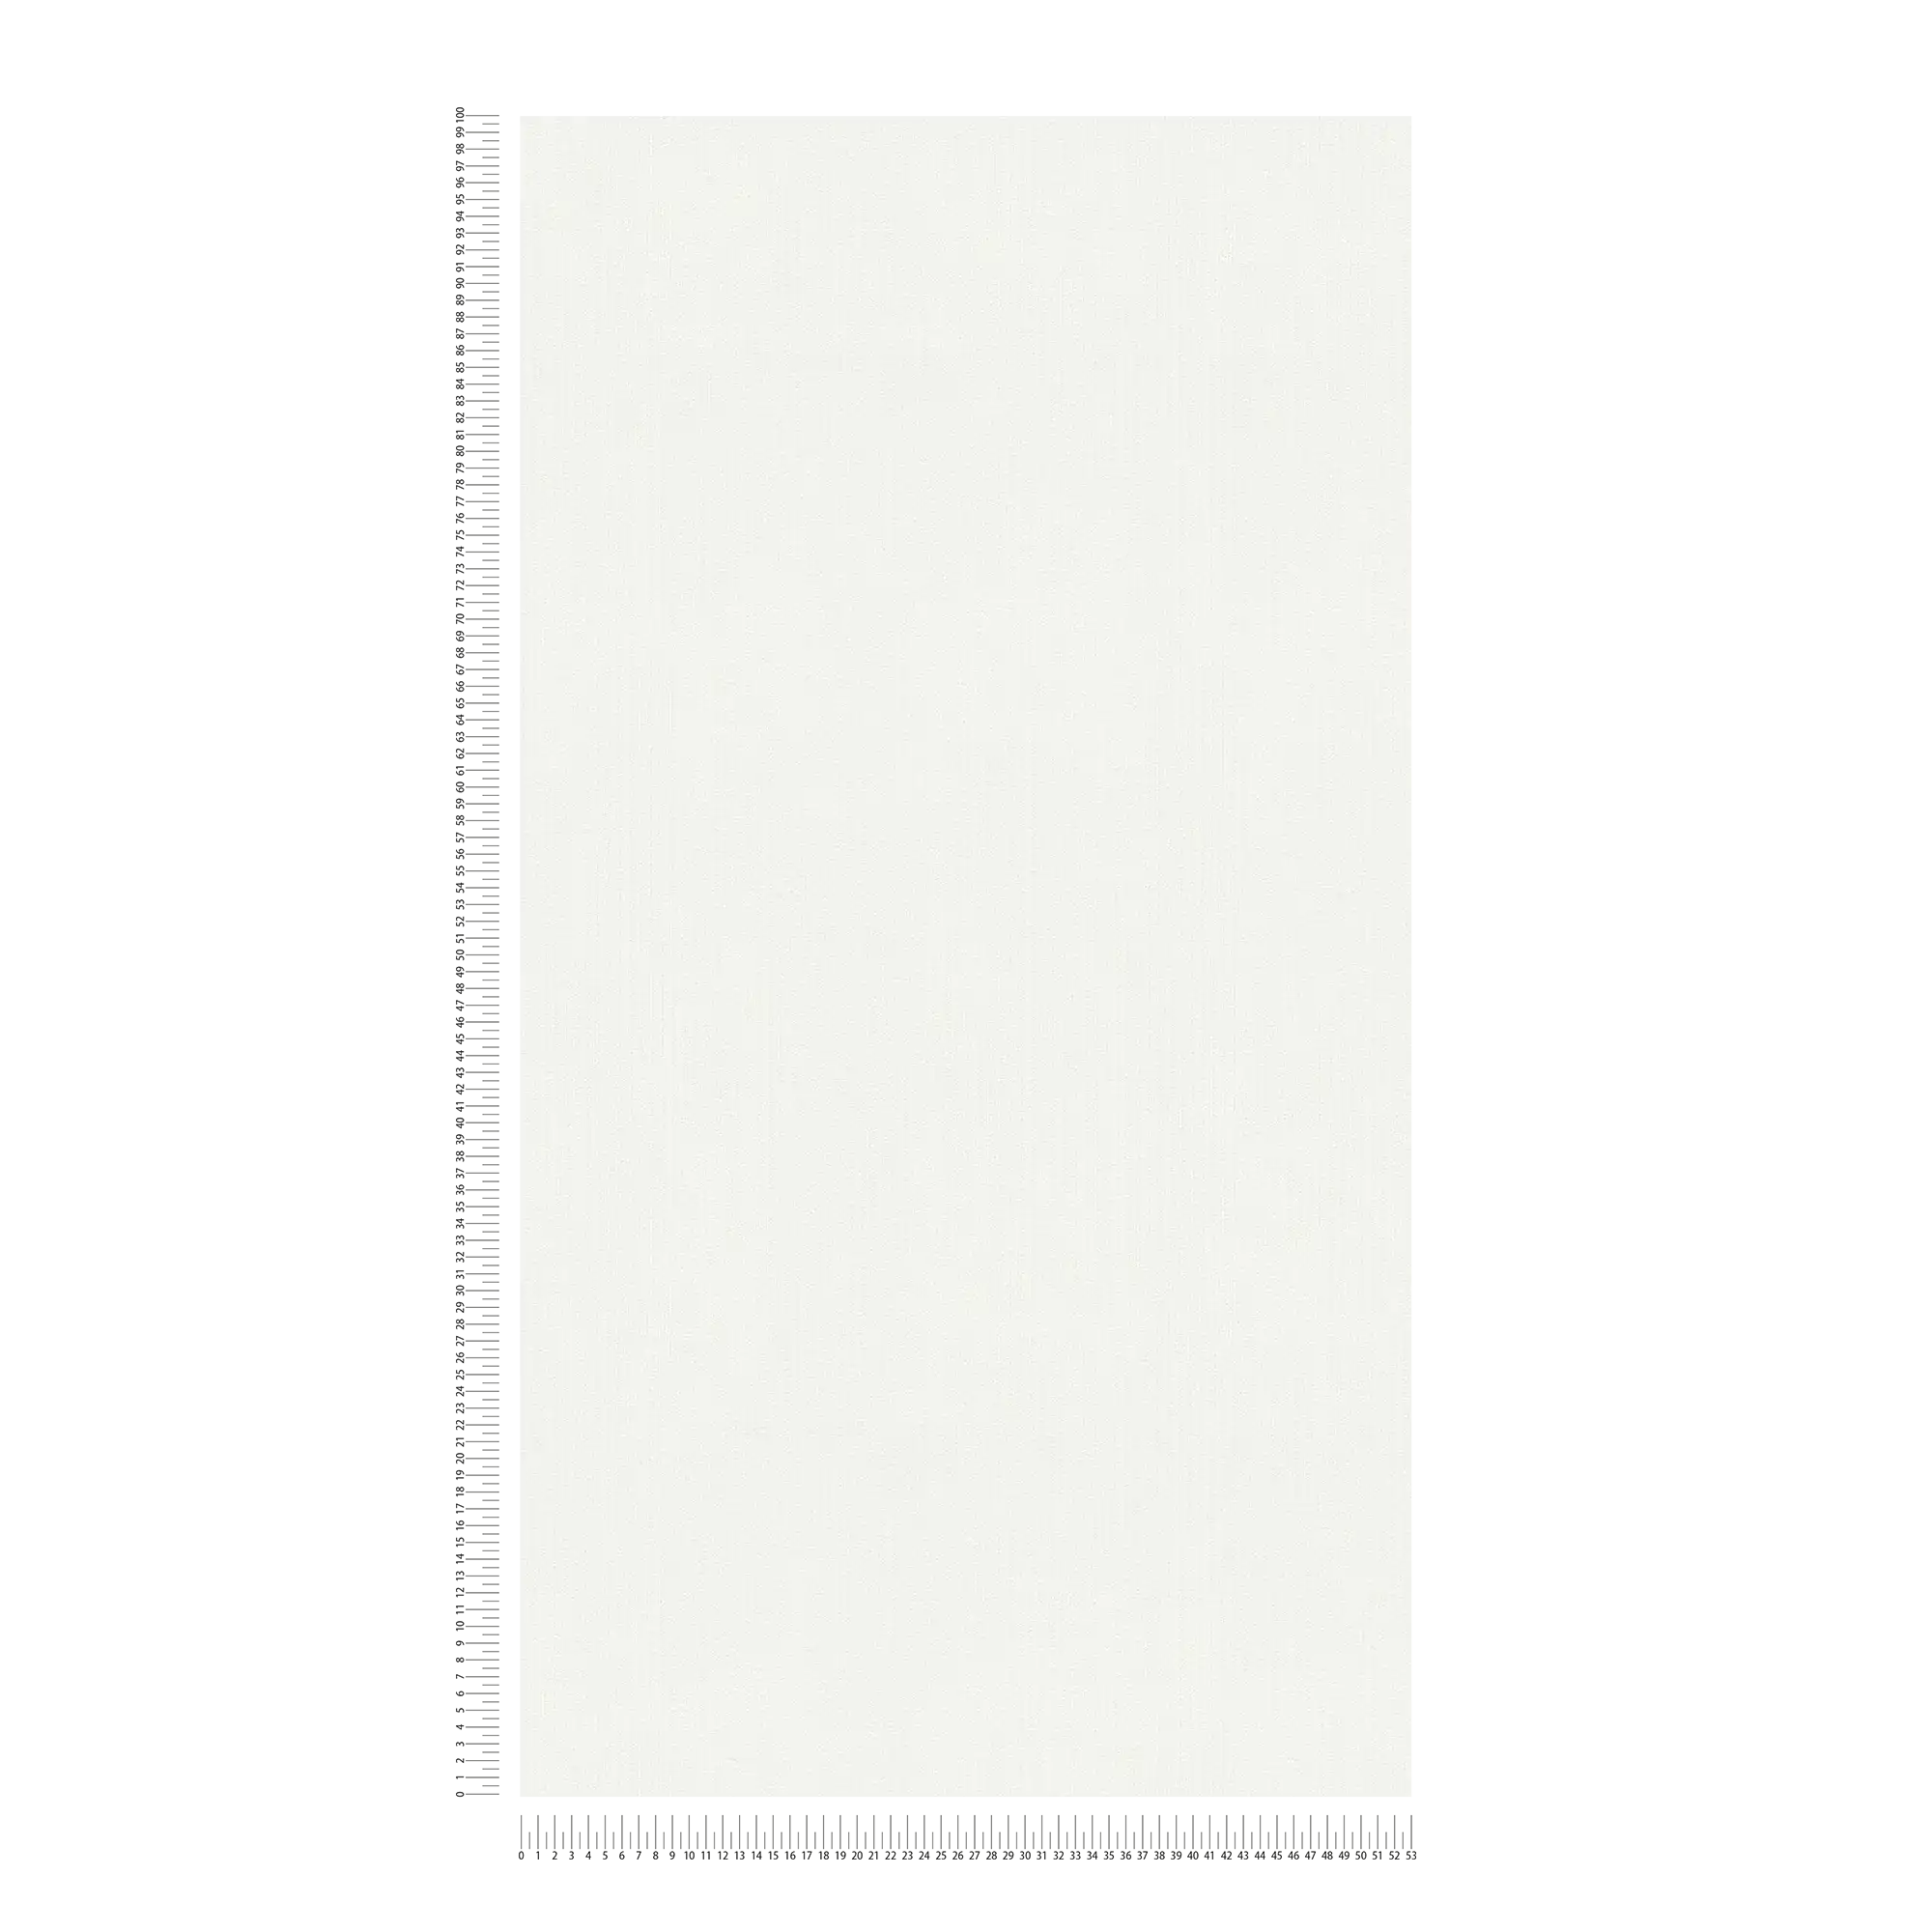             Unifarbene Tapete Weiß mit liniertem Strukturmuster
        